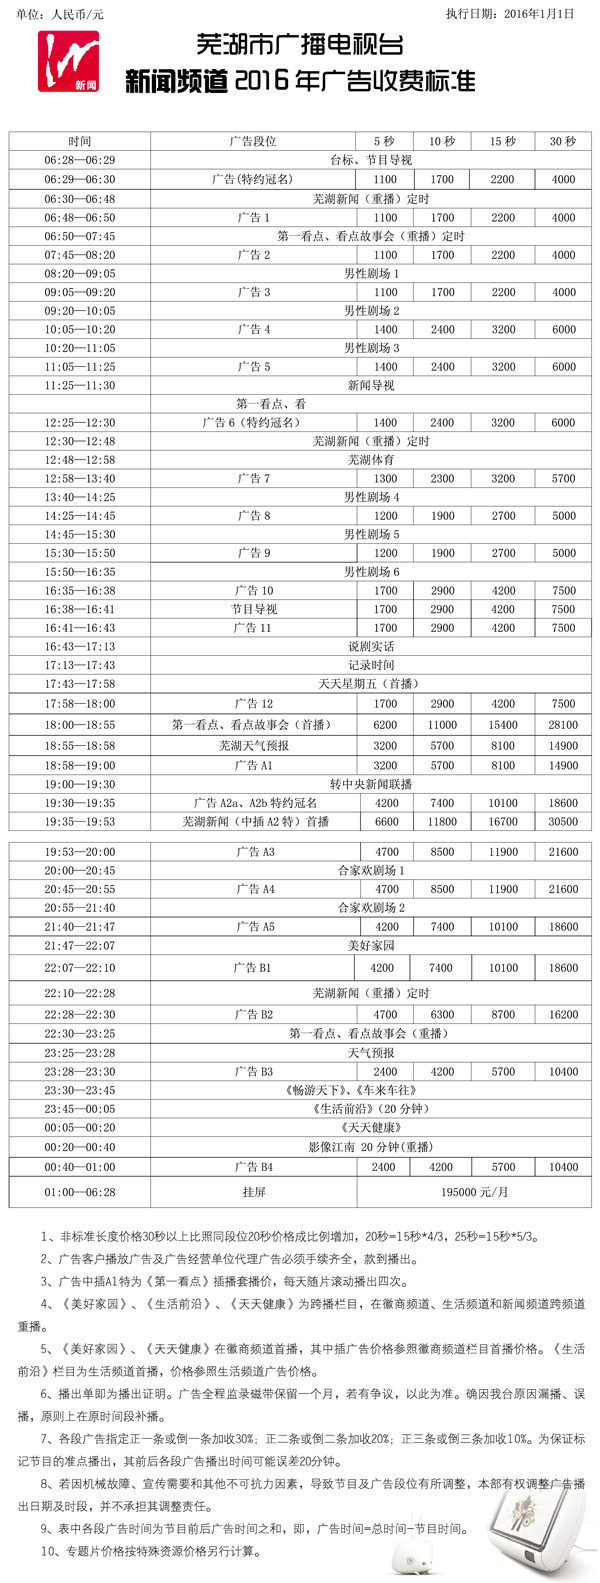 芜湖电视台新闻综合频道2016年广告价格